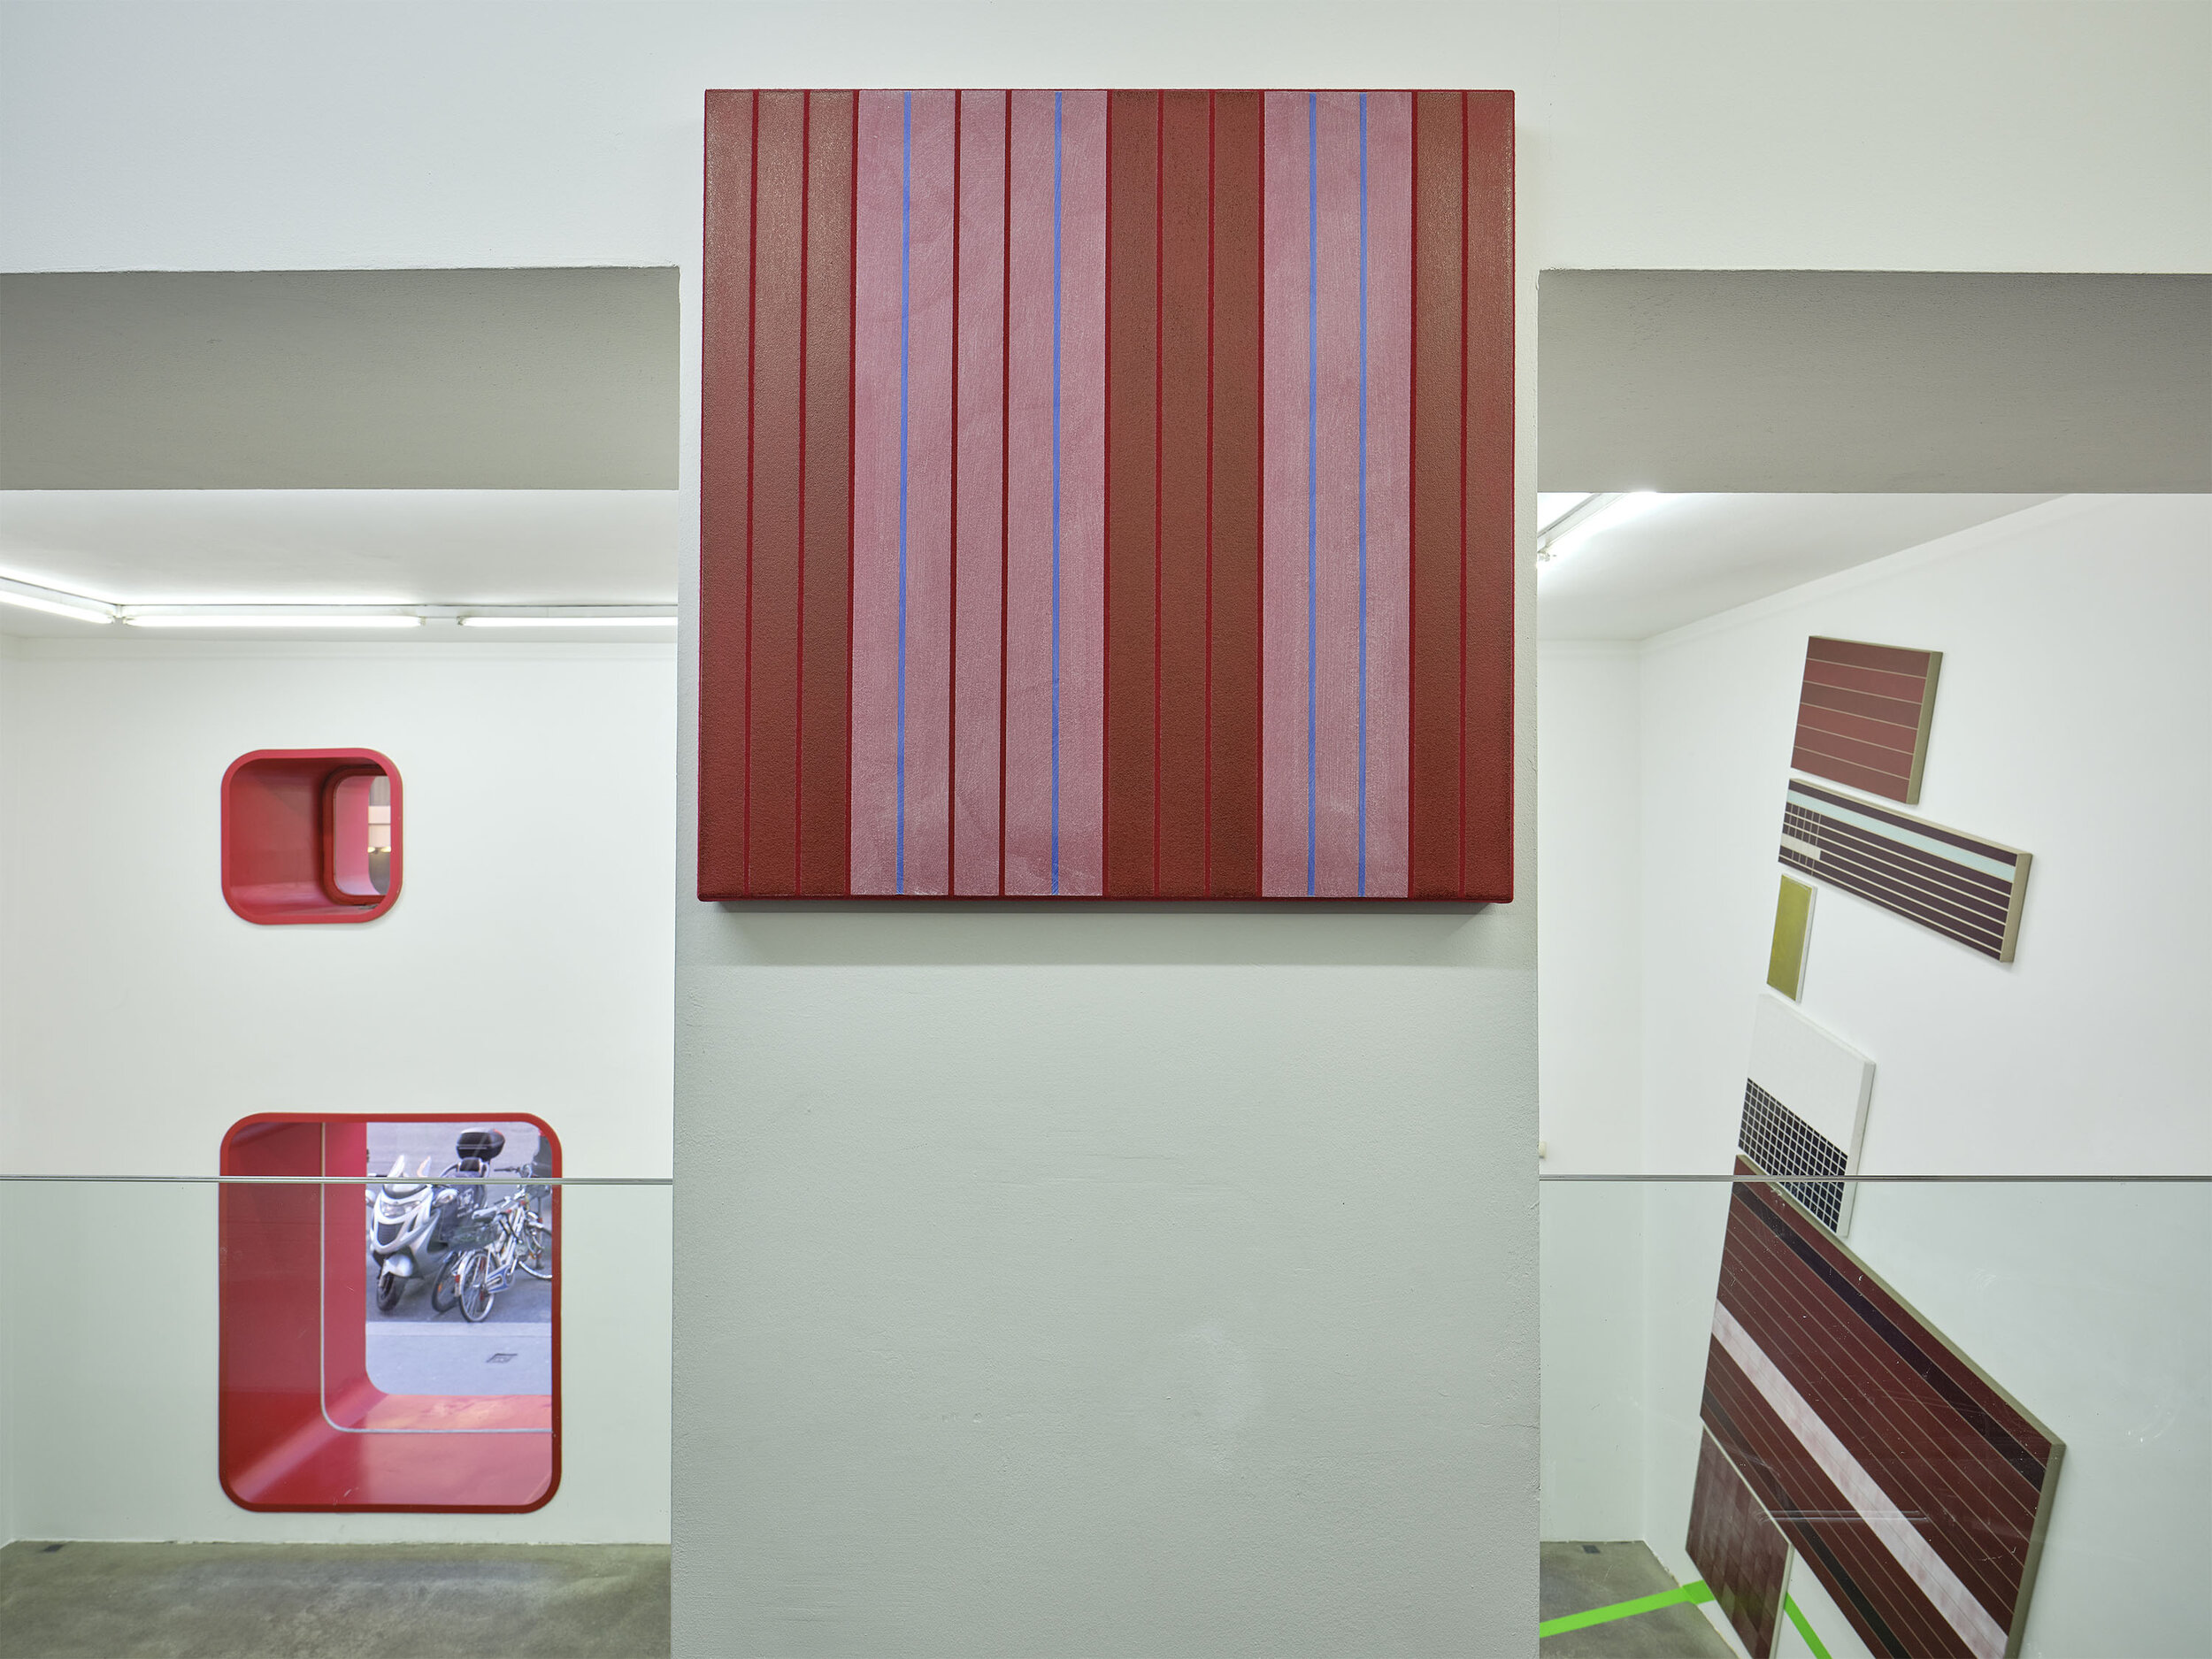 Galerie-Johann-Widauer-Exhibition-2021-Herbert-Hinteregger-08.jpg